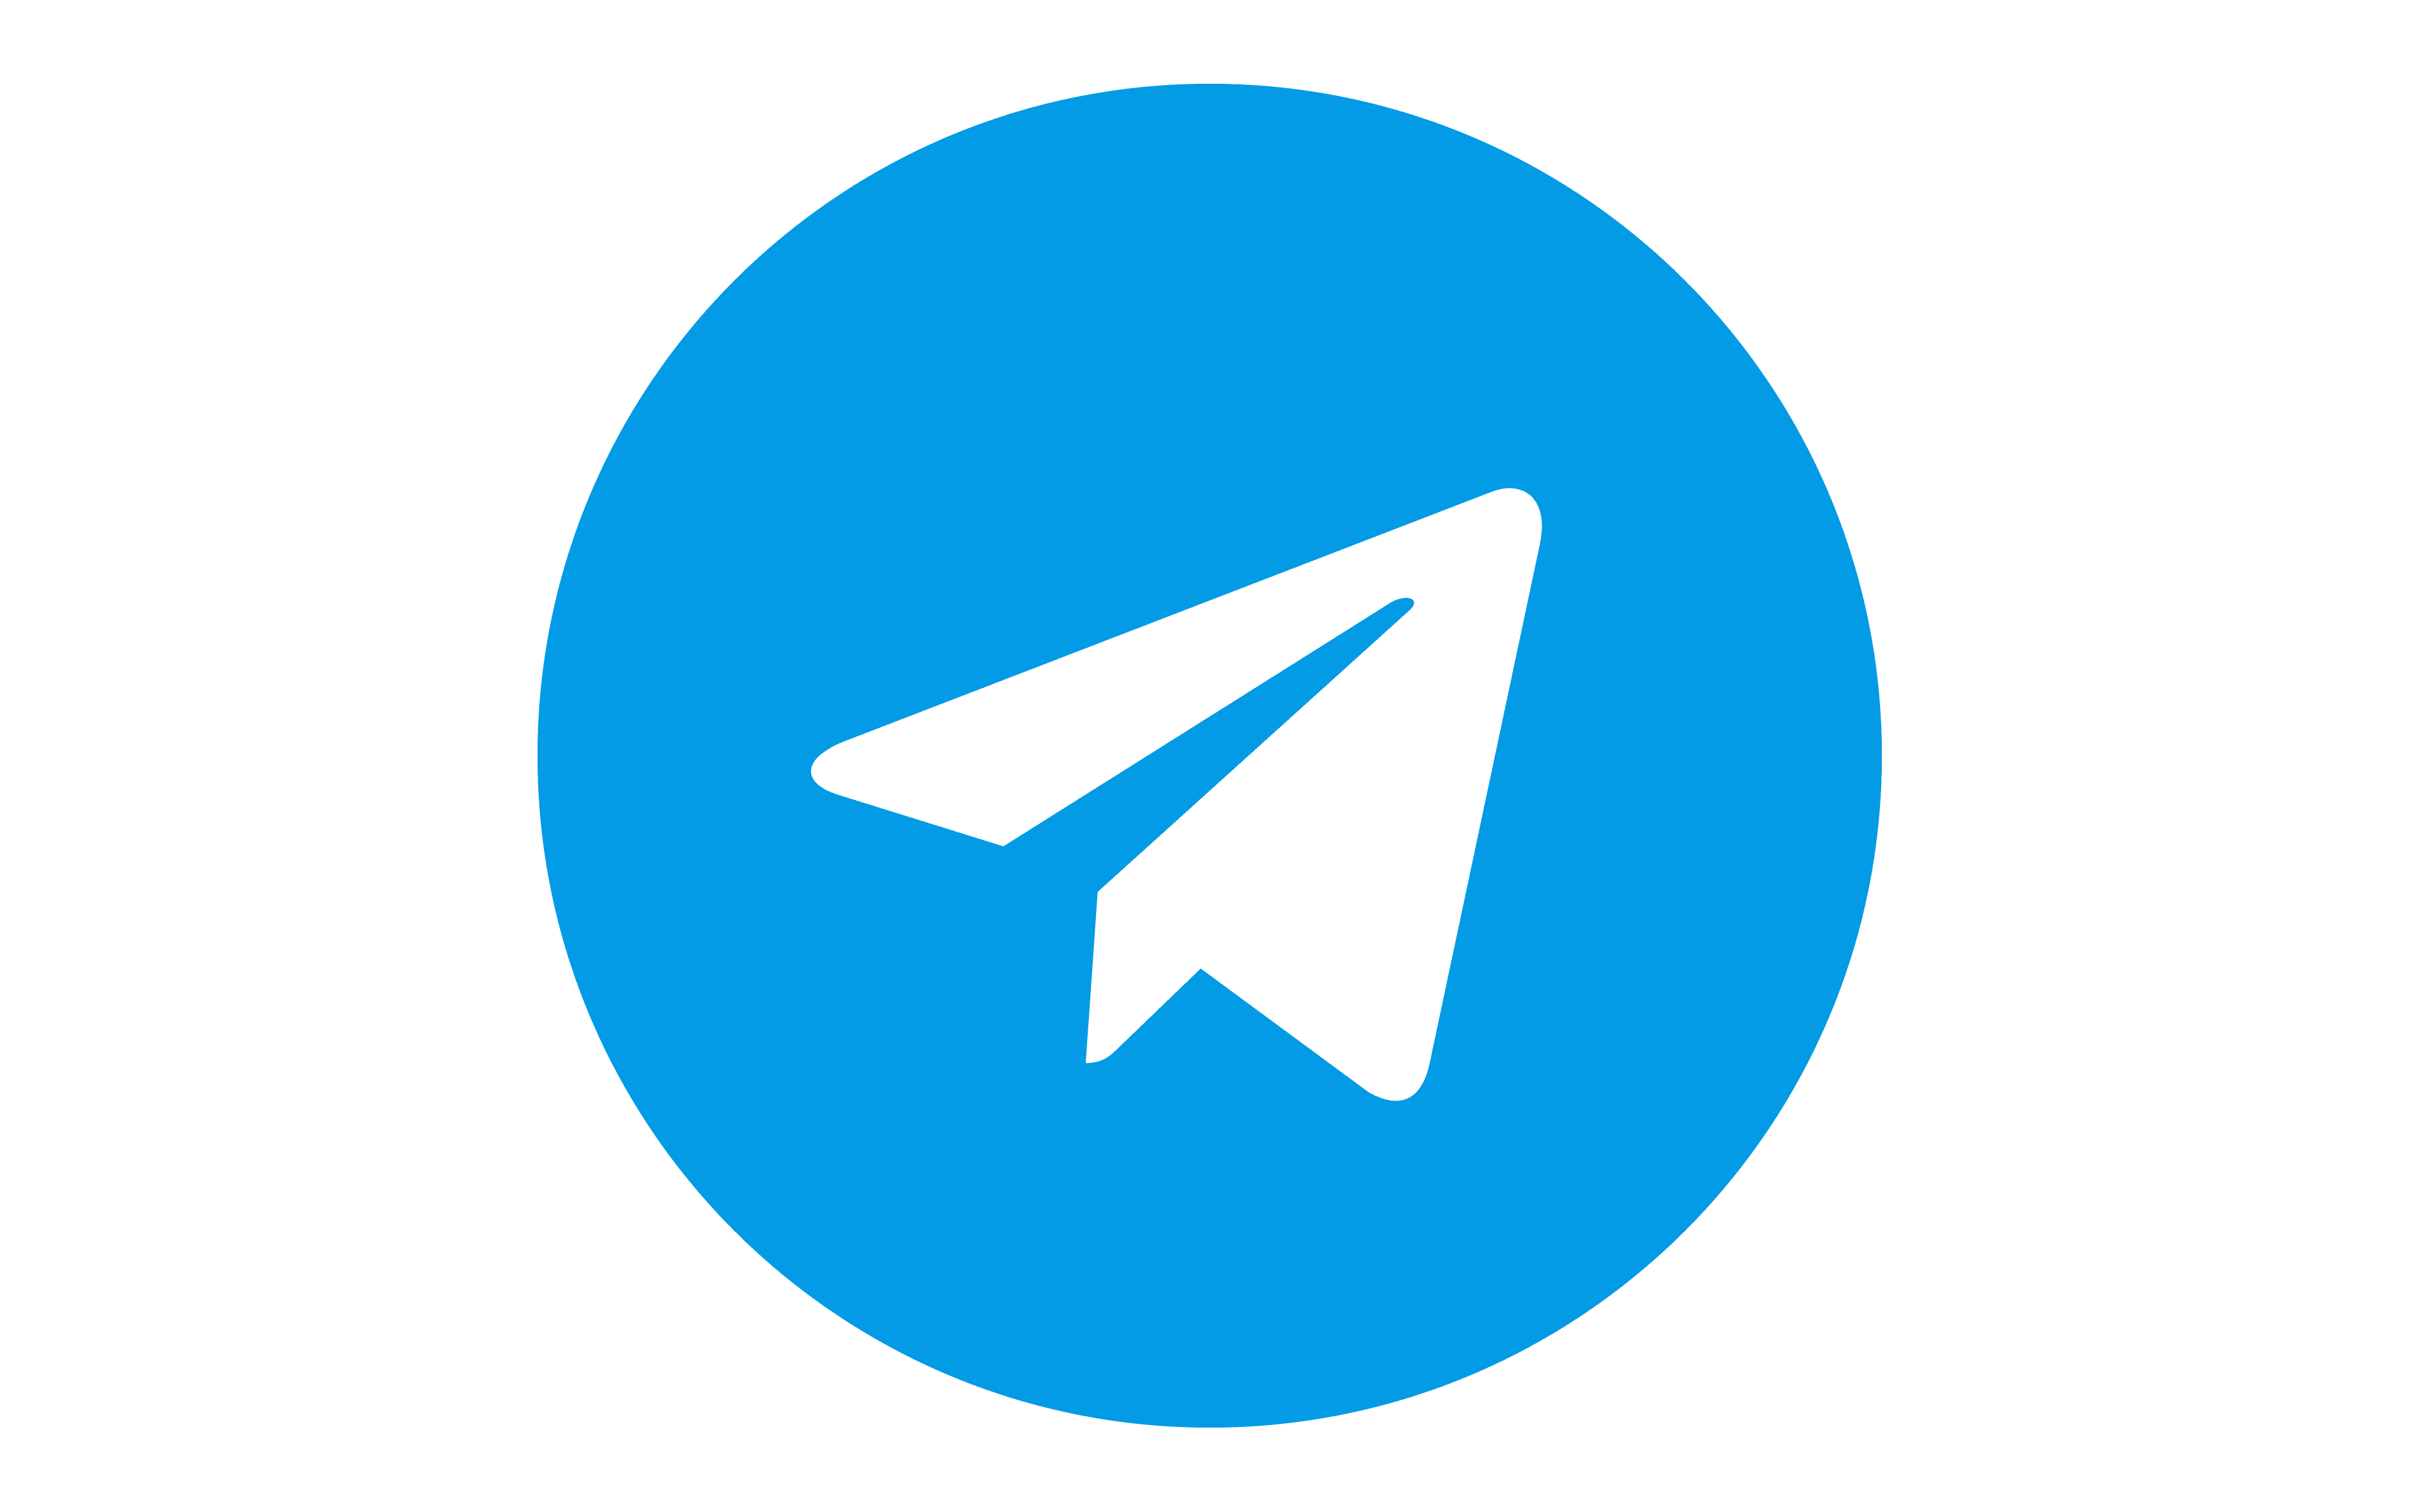 Отправитель телеграм. Круглый значок телеграмма. Иконка телеграмм круглая. Логотип телеграм. Логотип телеграмм круглый.